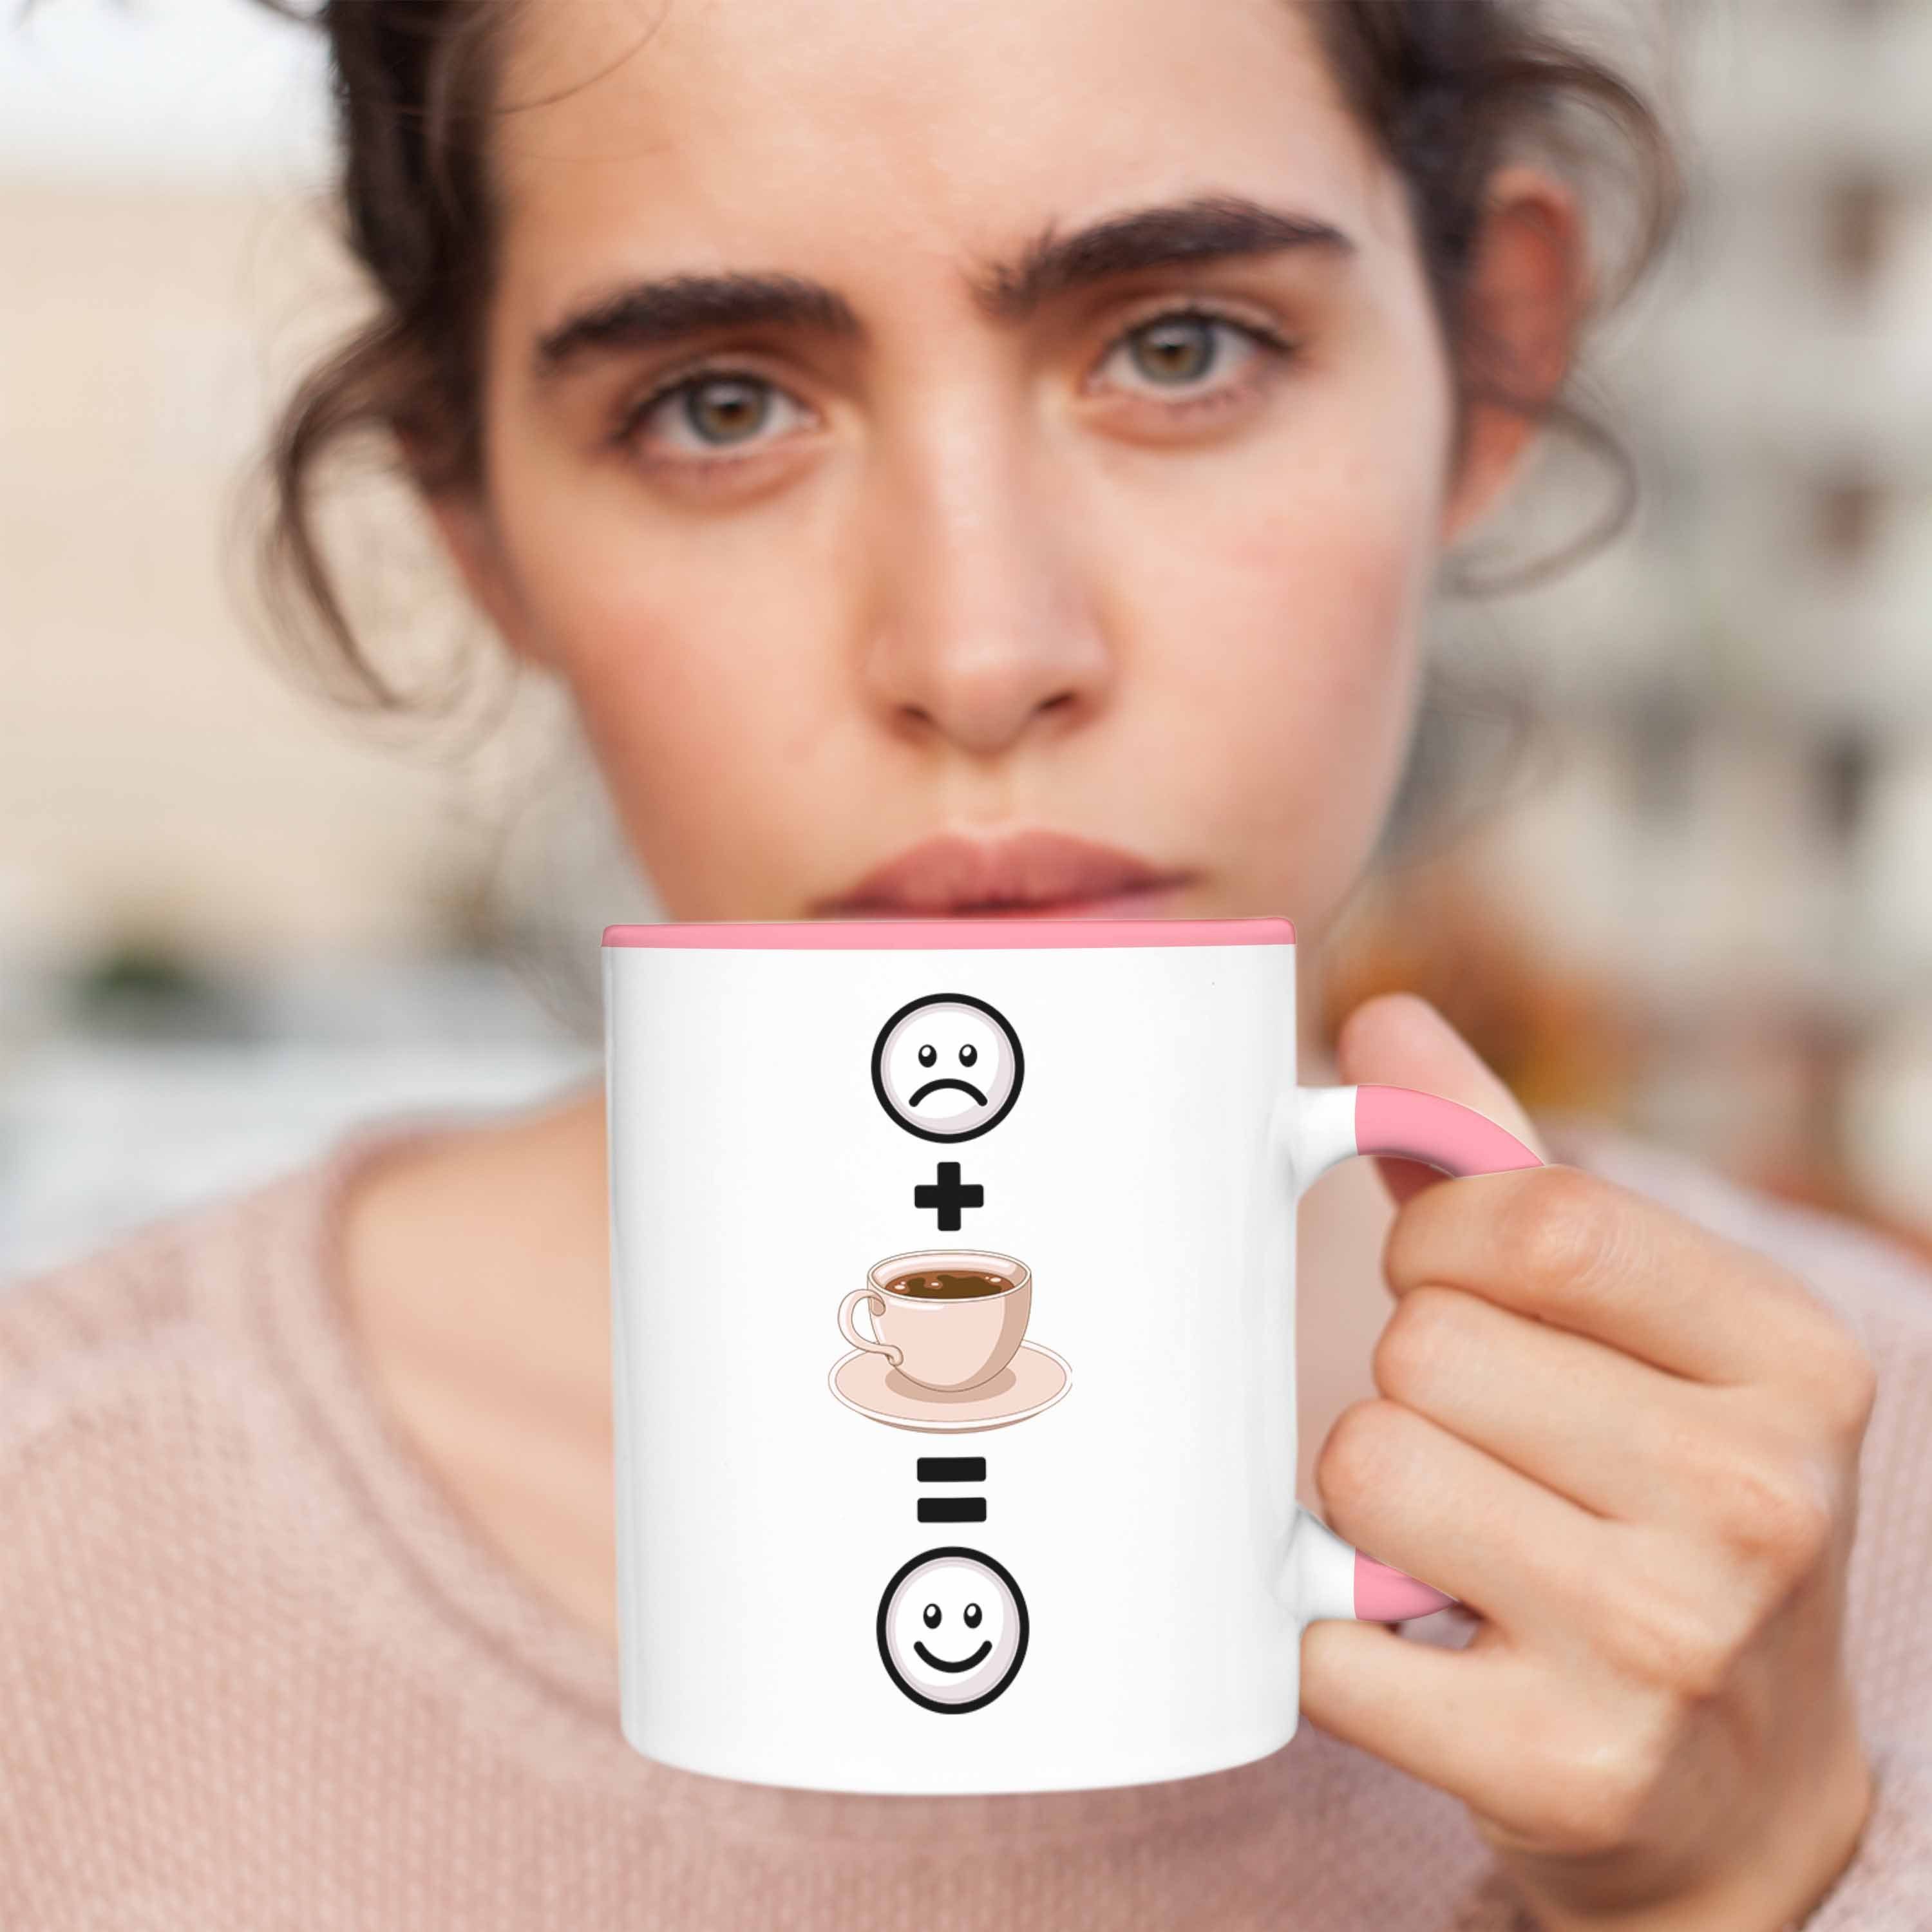 Kaffee für Geschenkidee Rosa Trendation Tasse Lustige Kaffeetrinker :(Kaff Geschenk Tasse